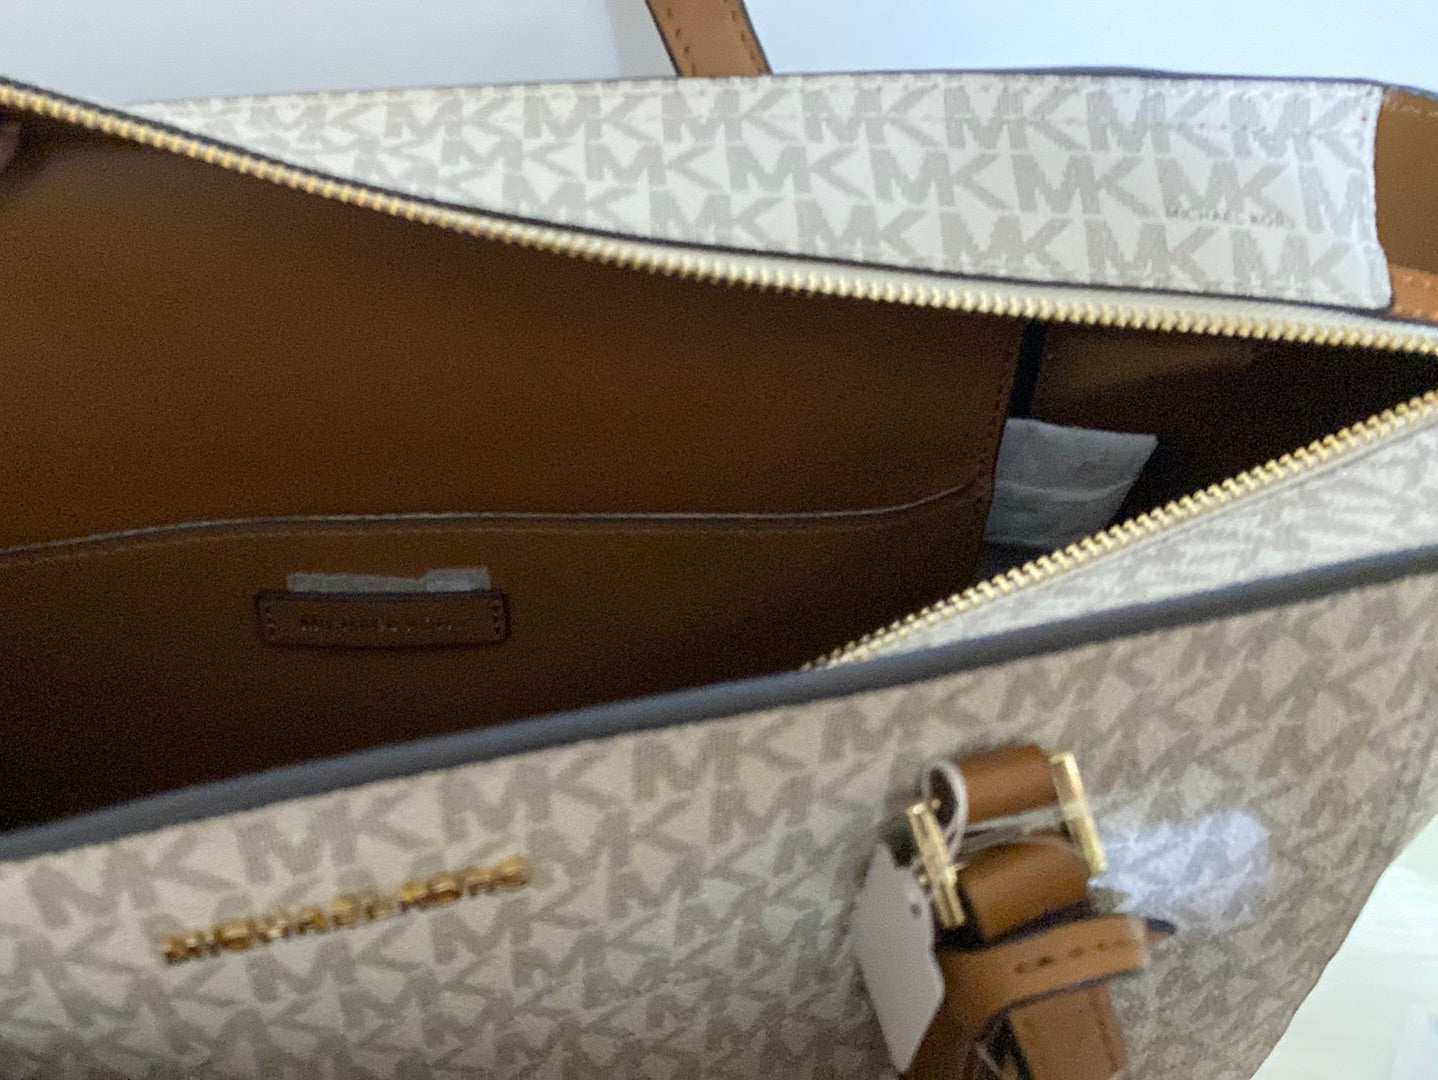 Shop Michael Kors Laptop Bags For Women